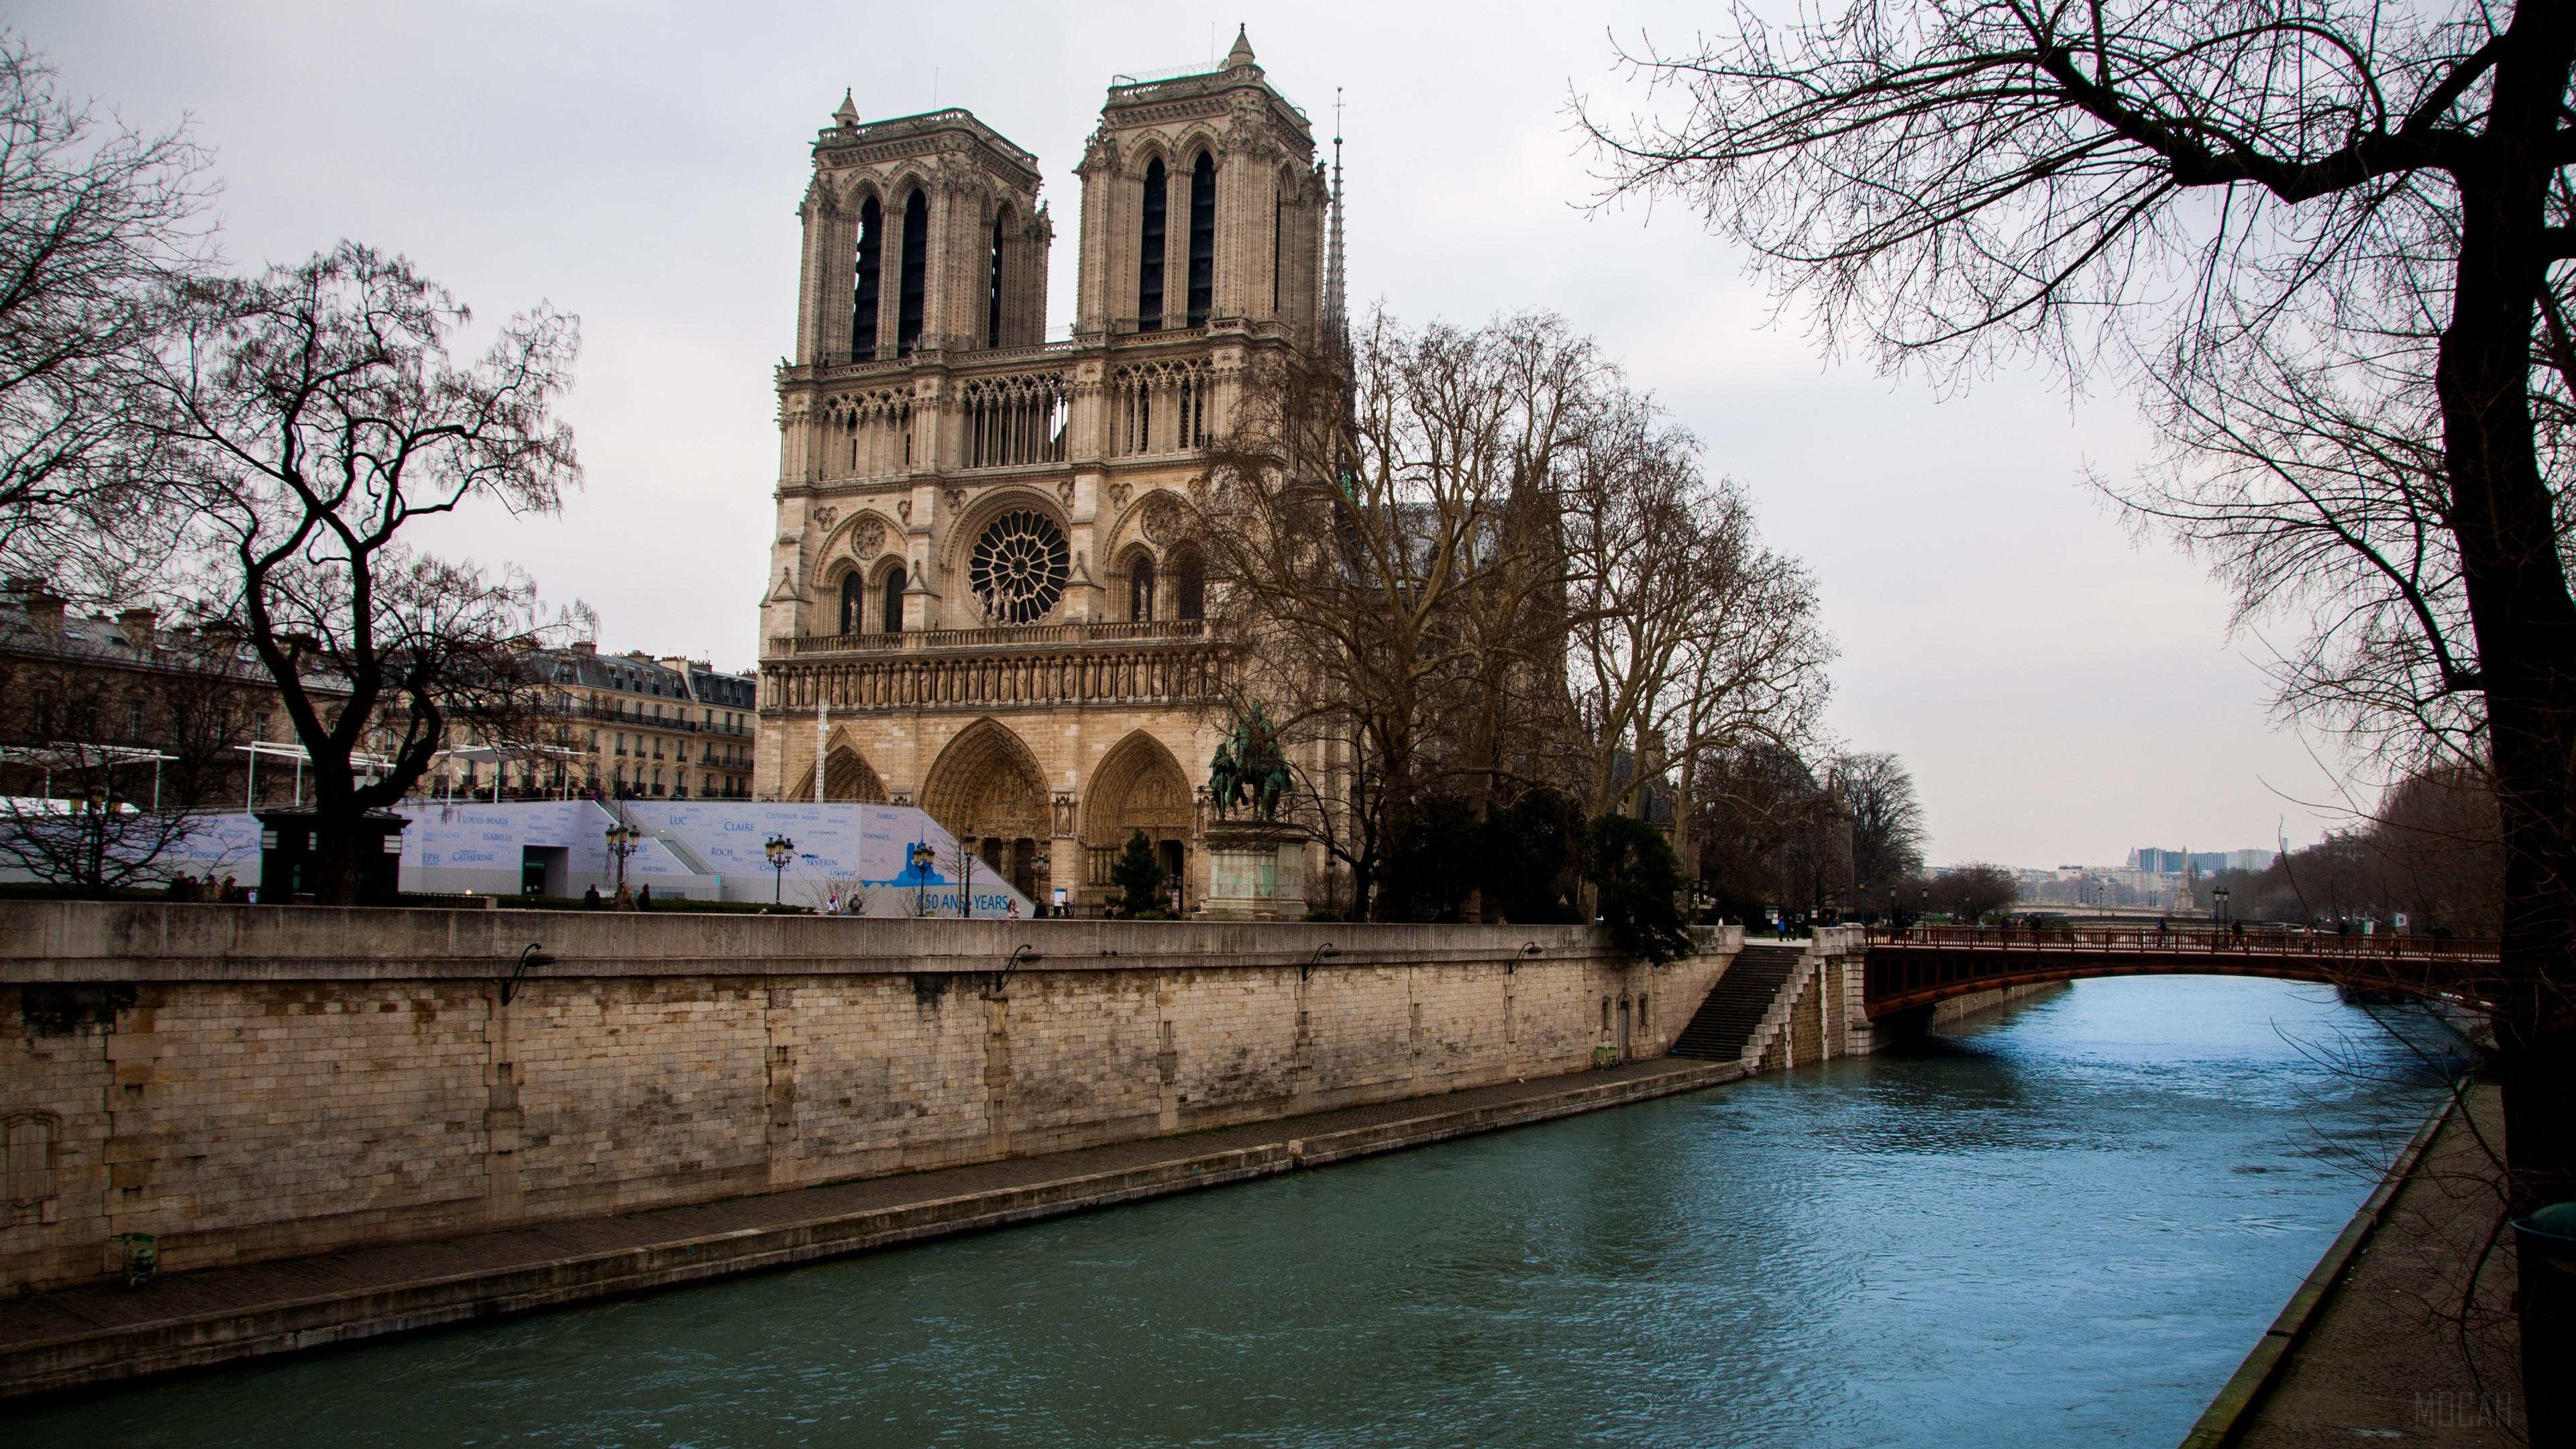 HD wallpaper, Europe, Building, Church, River 4K, Architecture, Cathedral, Notre Dame De Paris, Paris, France